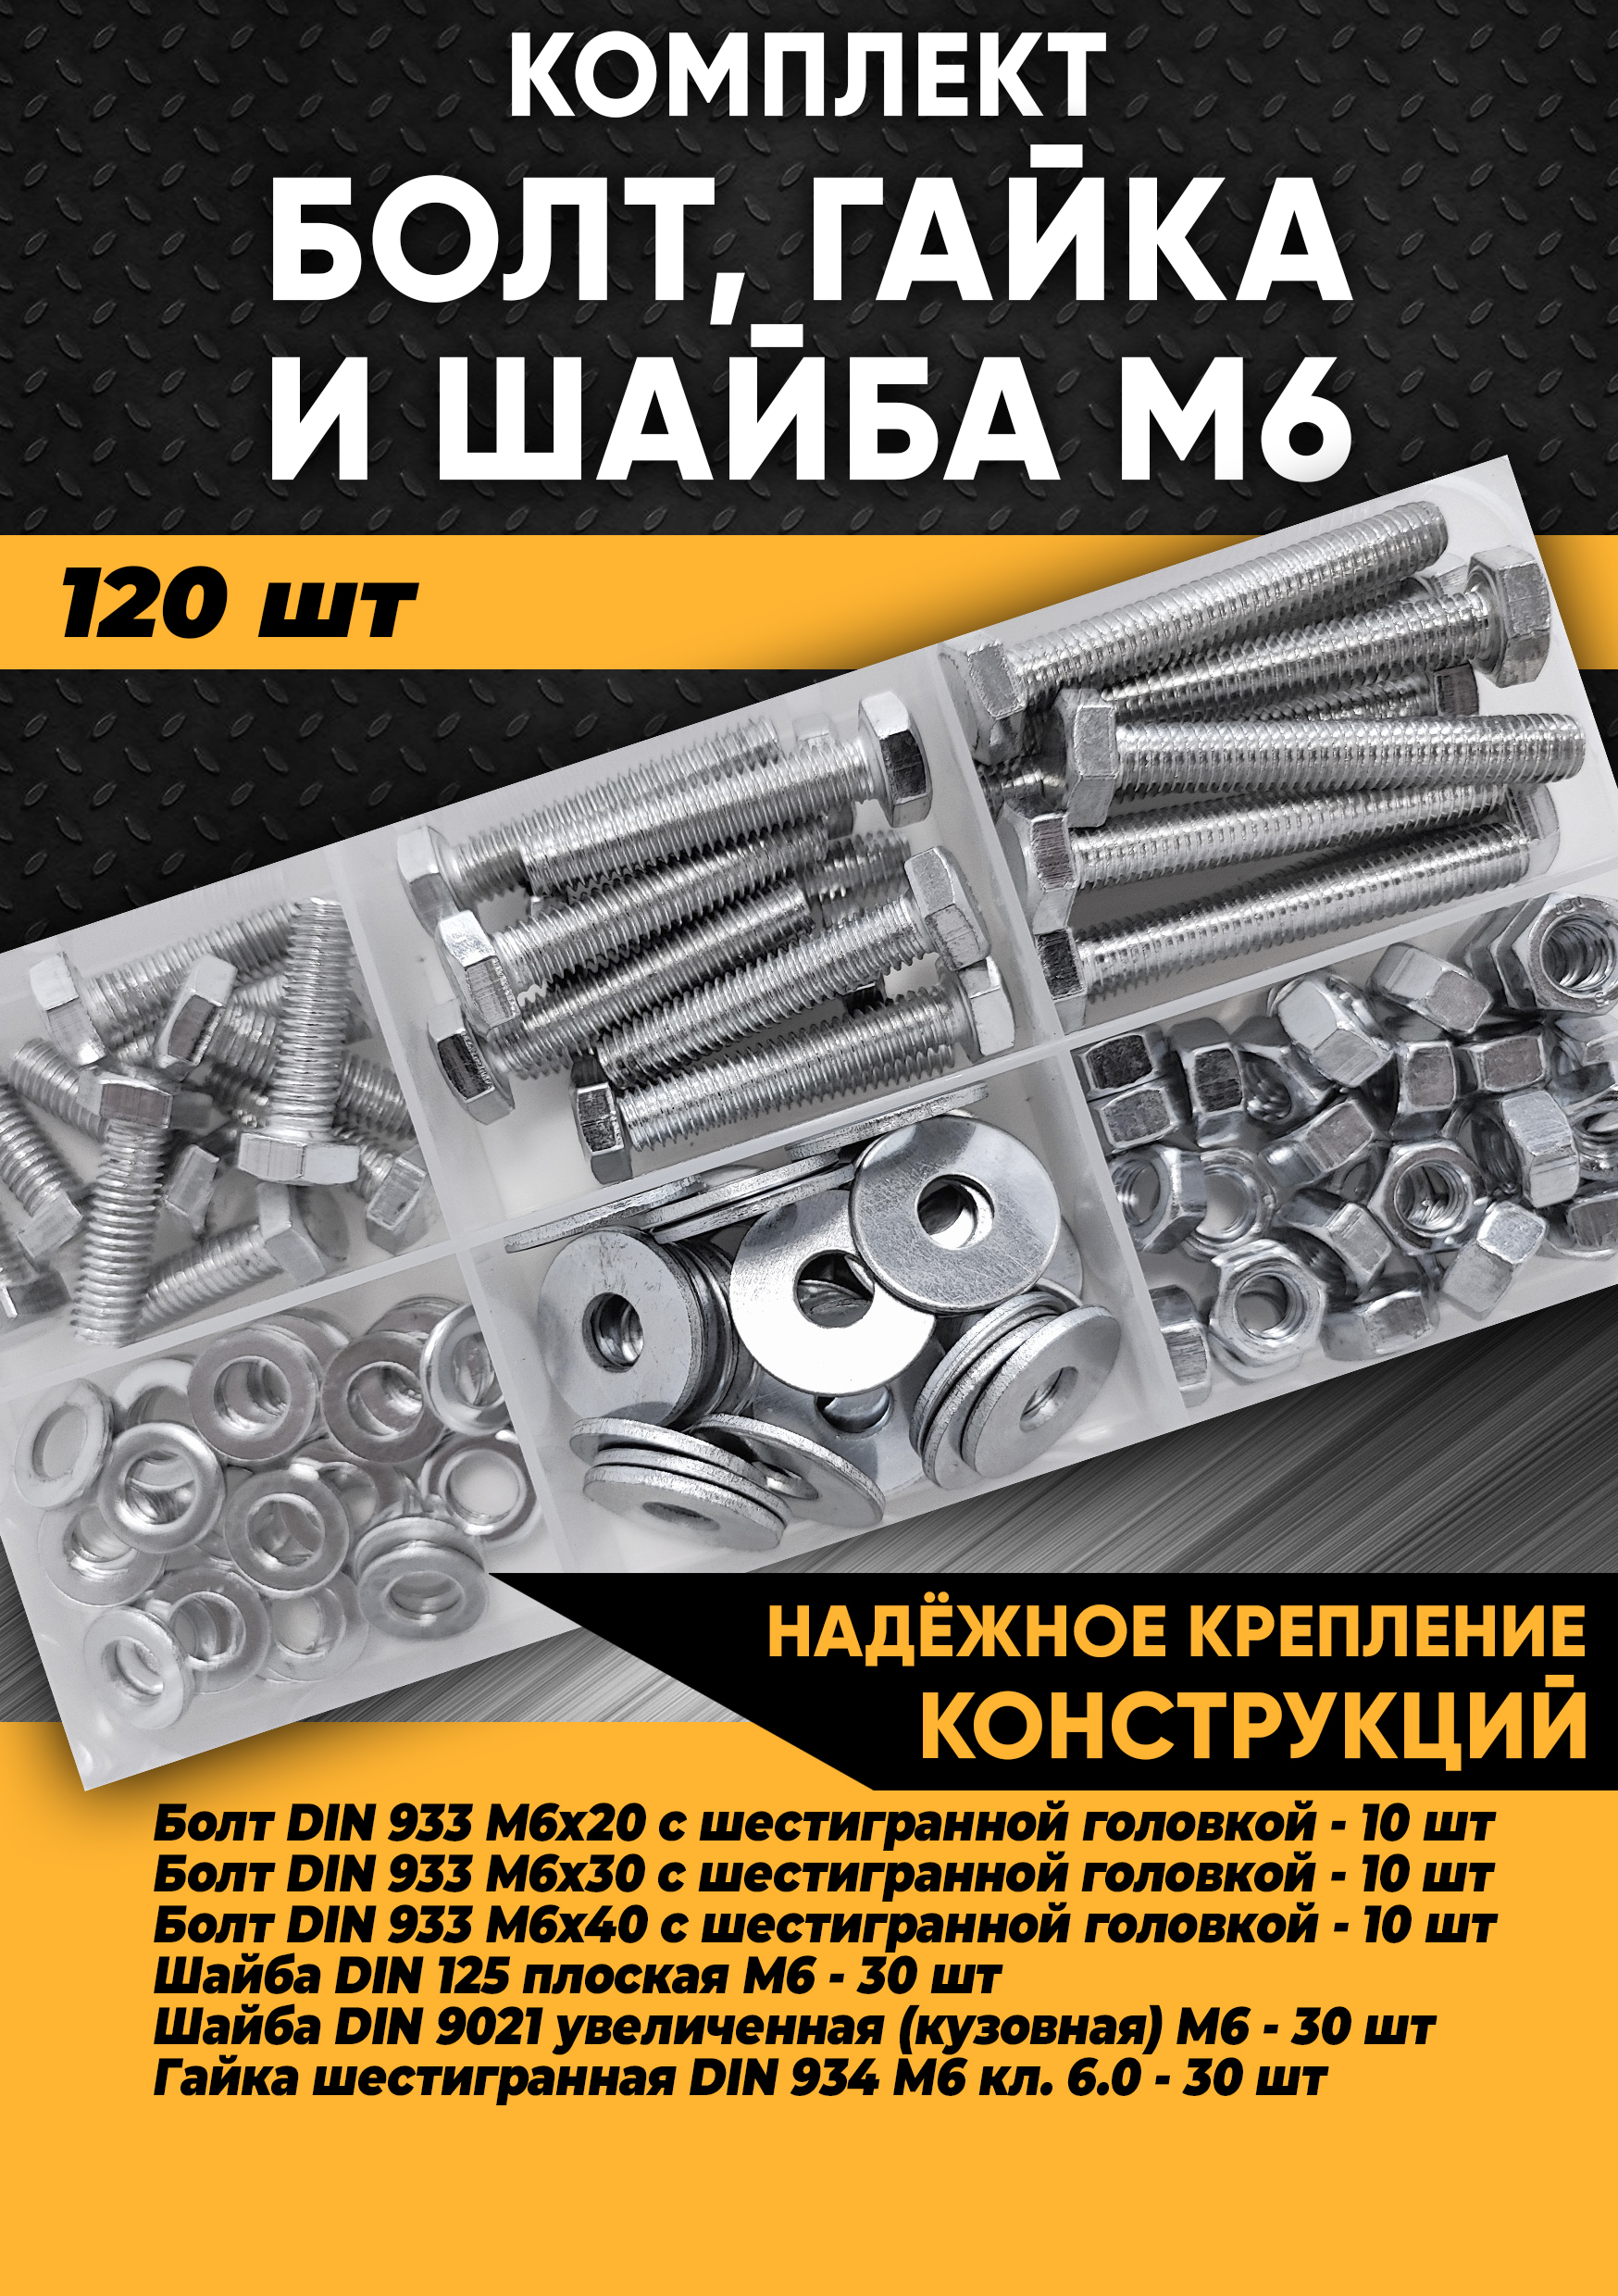 Комплект болт М6, гайка М6, шайба М6 - 120 шт. в органайзере, KraSimall 100273 комплект для ремонта orio